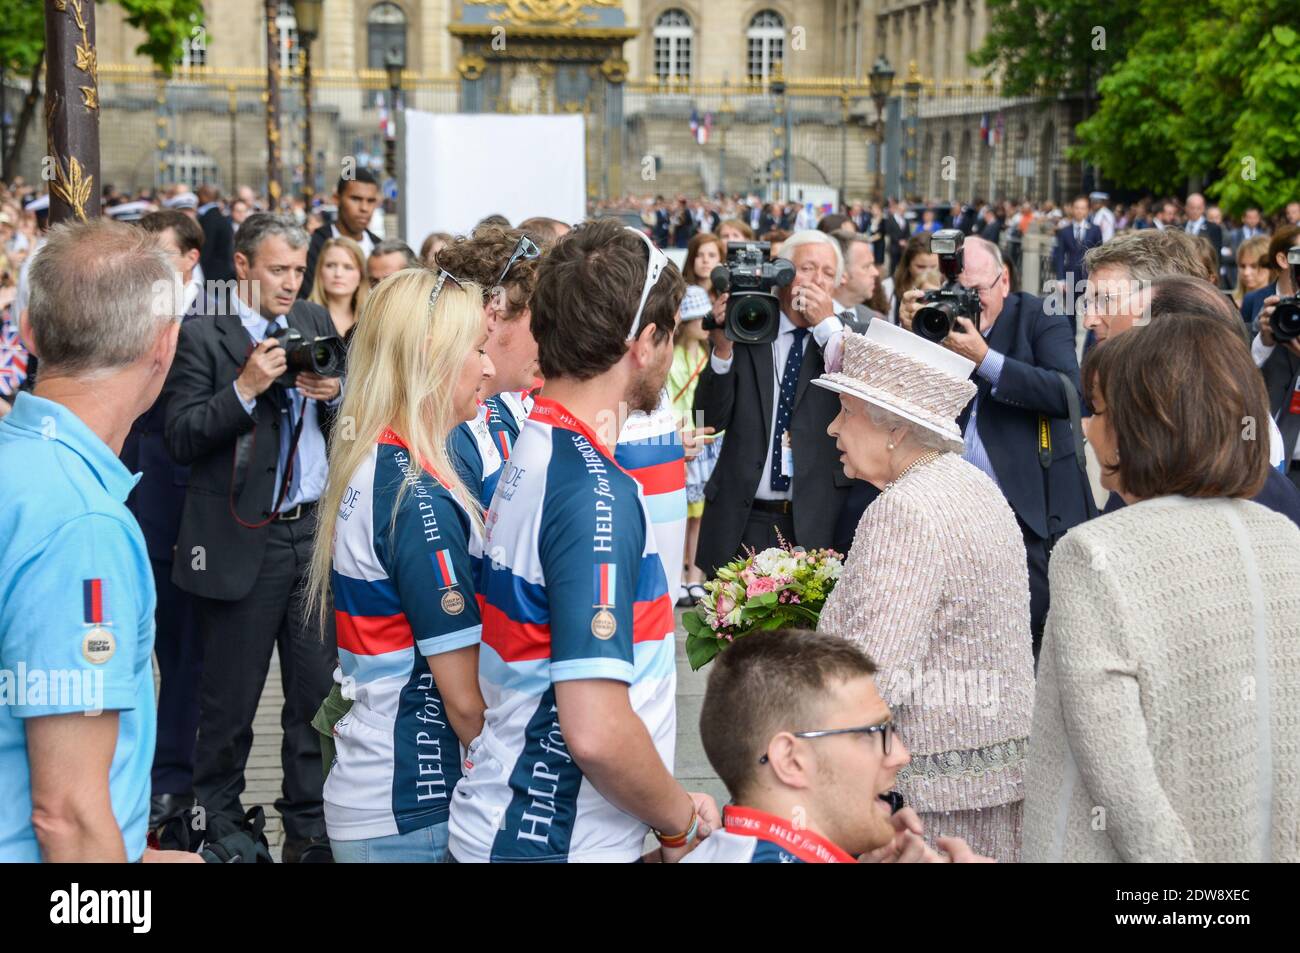 La reine Elizabeth II visite le marché aux fleurs de Paris le 7 juin 2014 à Paris, en France. La Reine est le dernier jour d'une visite d'État de trois jours à Paris. Le marché aux fleurs a été nommé 'arche aux fleurs Reine Elizabeth II' en l'honneur de la Reine aujourd'hui. Photo par Ammar Abd Rabbo/ABACAPRESS.COM Banque D'Images